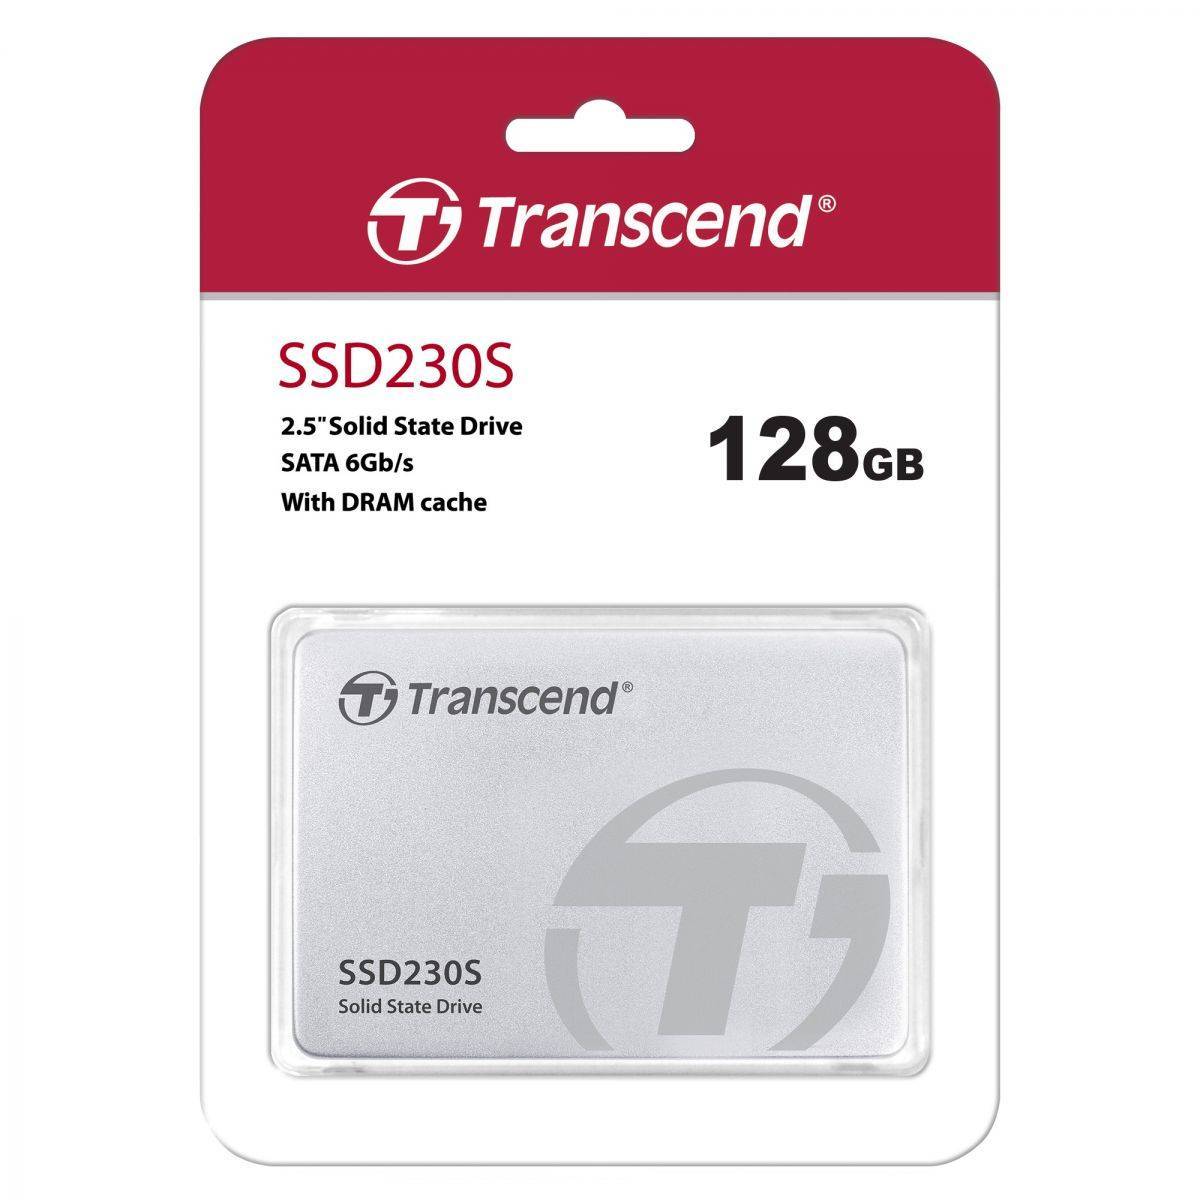 Transcend 128GB SSD, 2.5", SATA III 6Gb/s SSD230 3D NAND